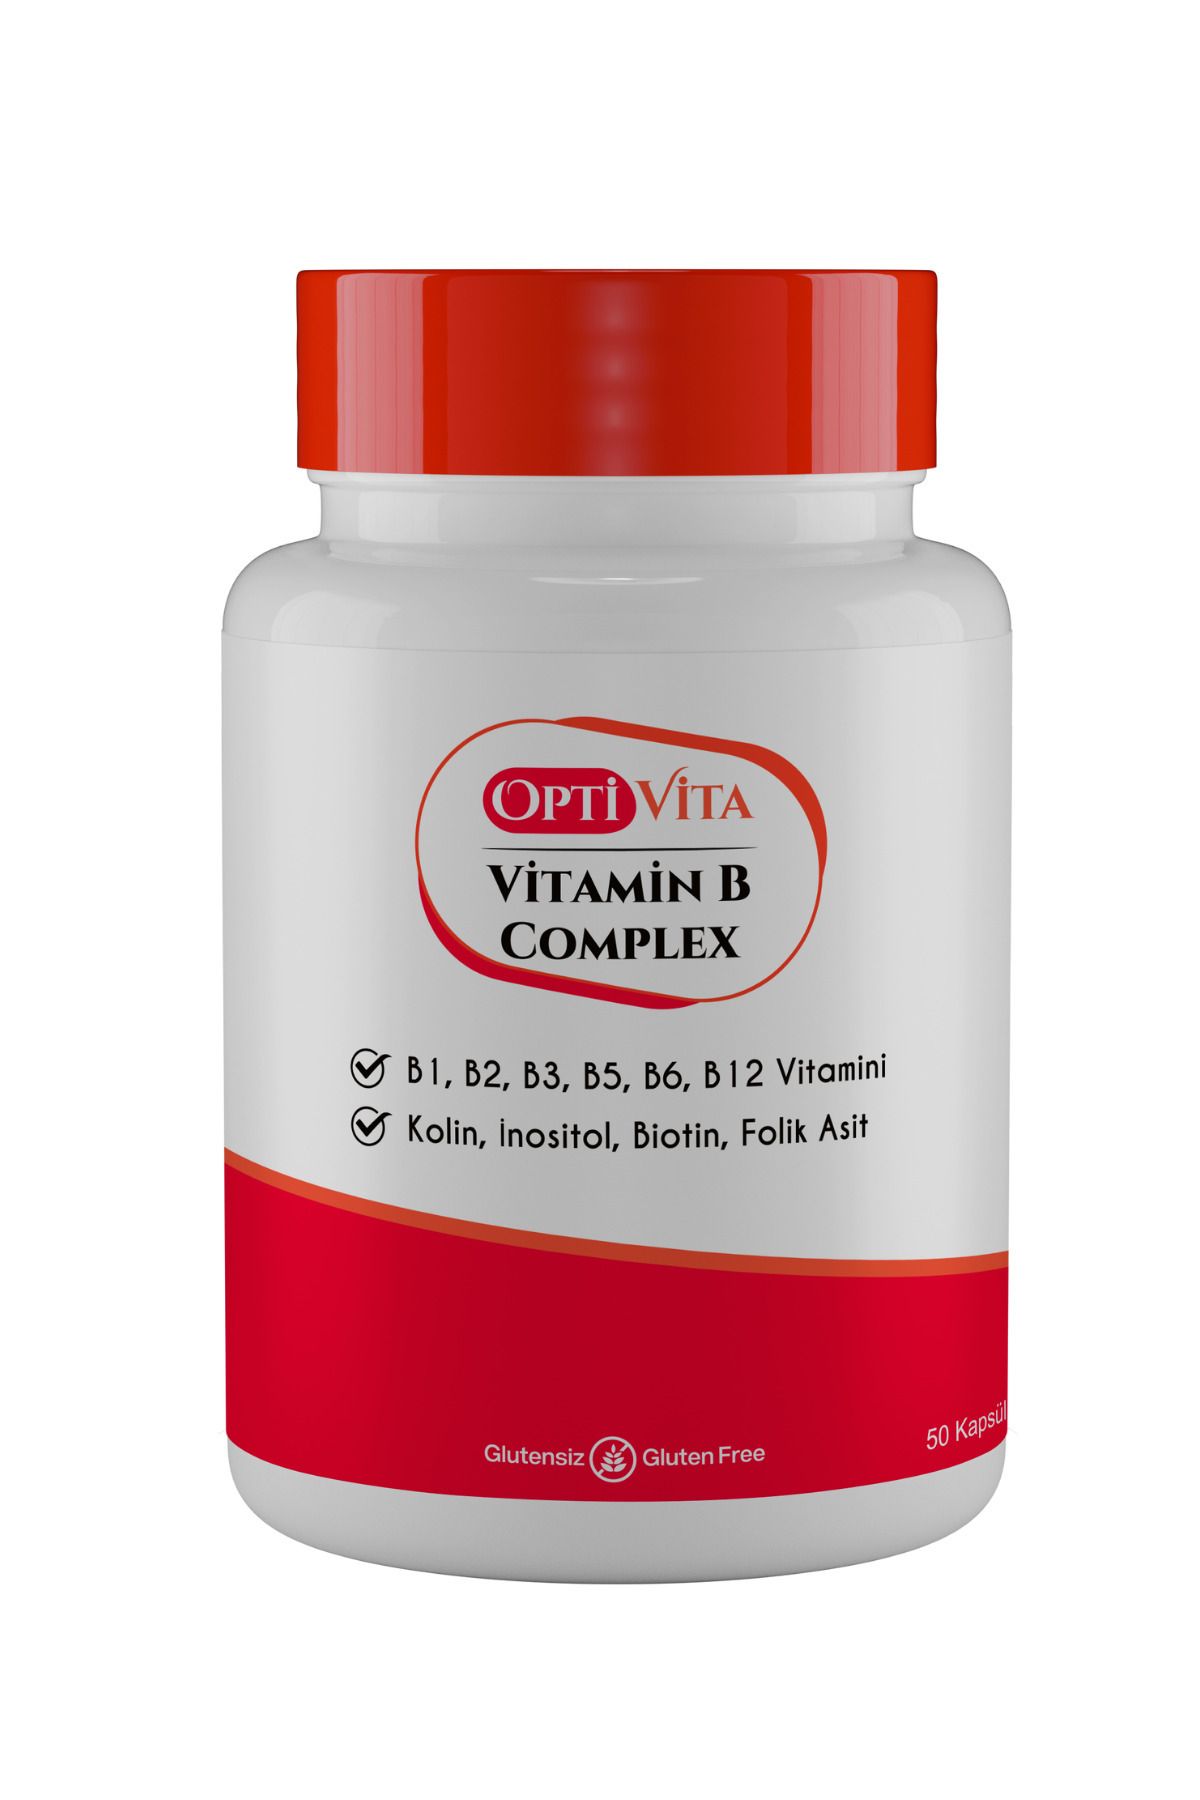 Optivita Vitamin B Complex 50 Kapsül B1, B2, B3, B5, B6, B12 Vitaminleri, Kolin, İnositol, Folik Asit, Biotin